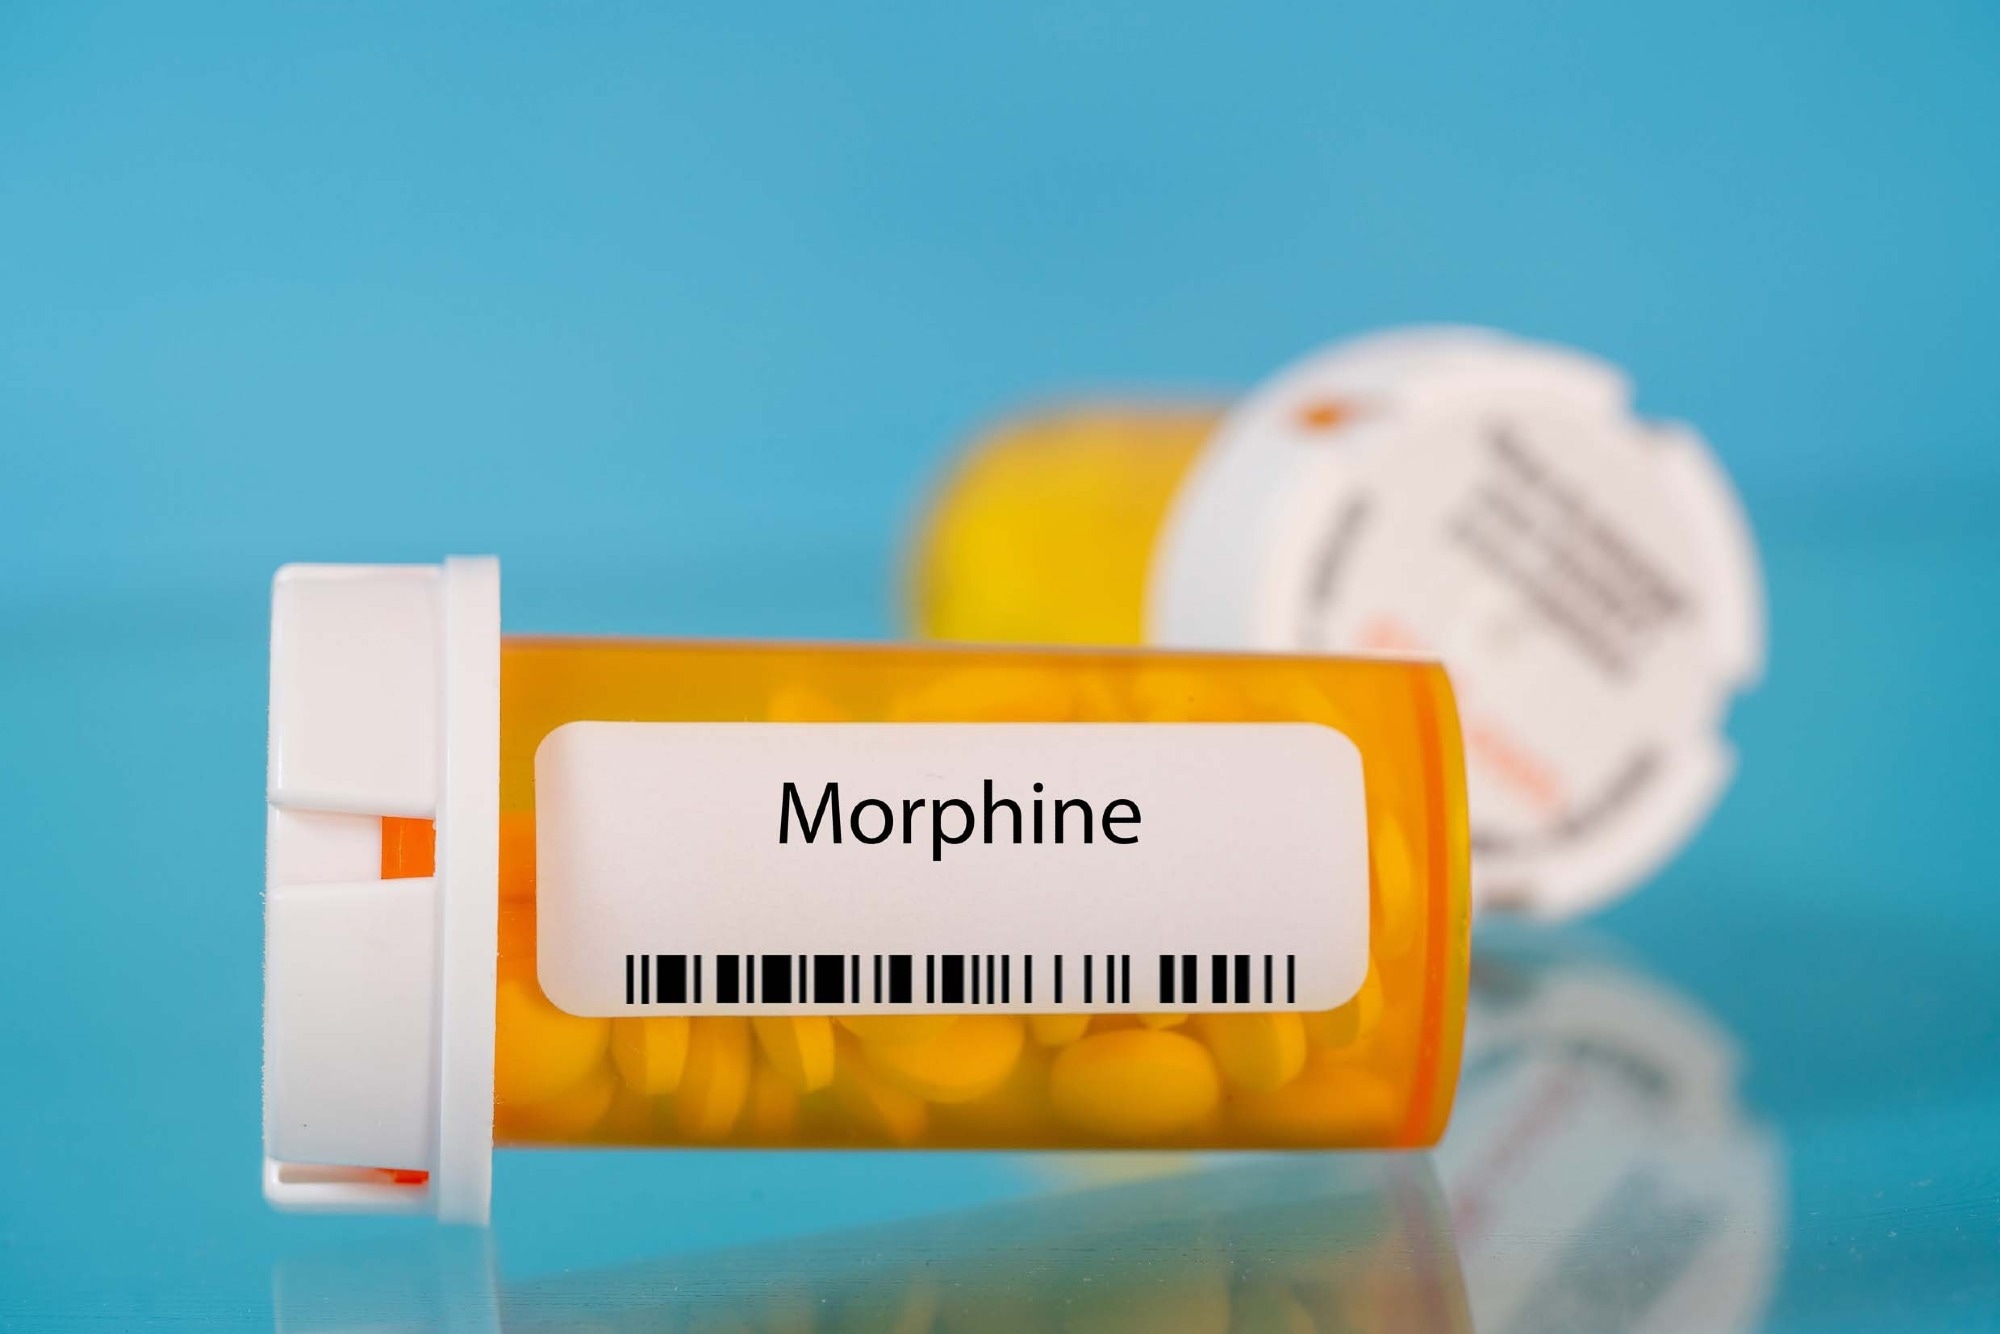 מורפיום מראה פוטנציאל כטיפול יעיל בשיעול לפיברוזיס ריאתי, מגלה מחקר